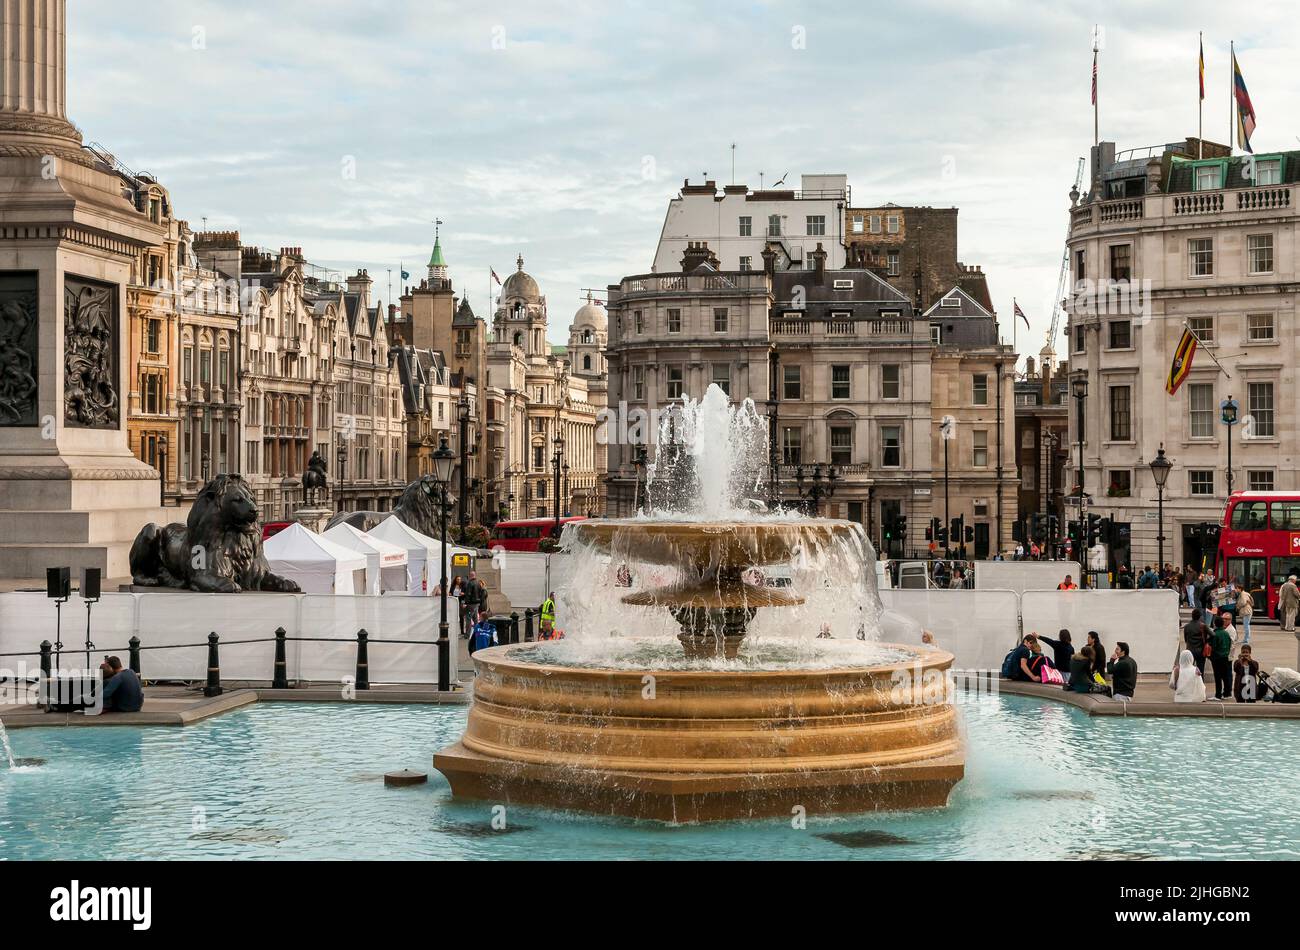 Londra, Inghilterra, Regno Unito - 26 settembre 2013: La fontana a Trafalgar Square nel centro di Londra. Foto Stock